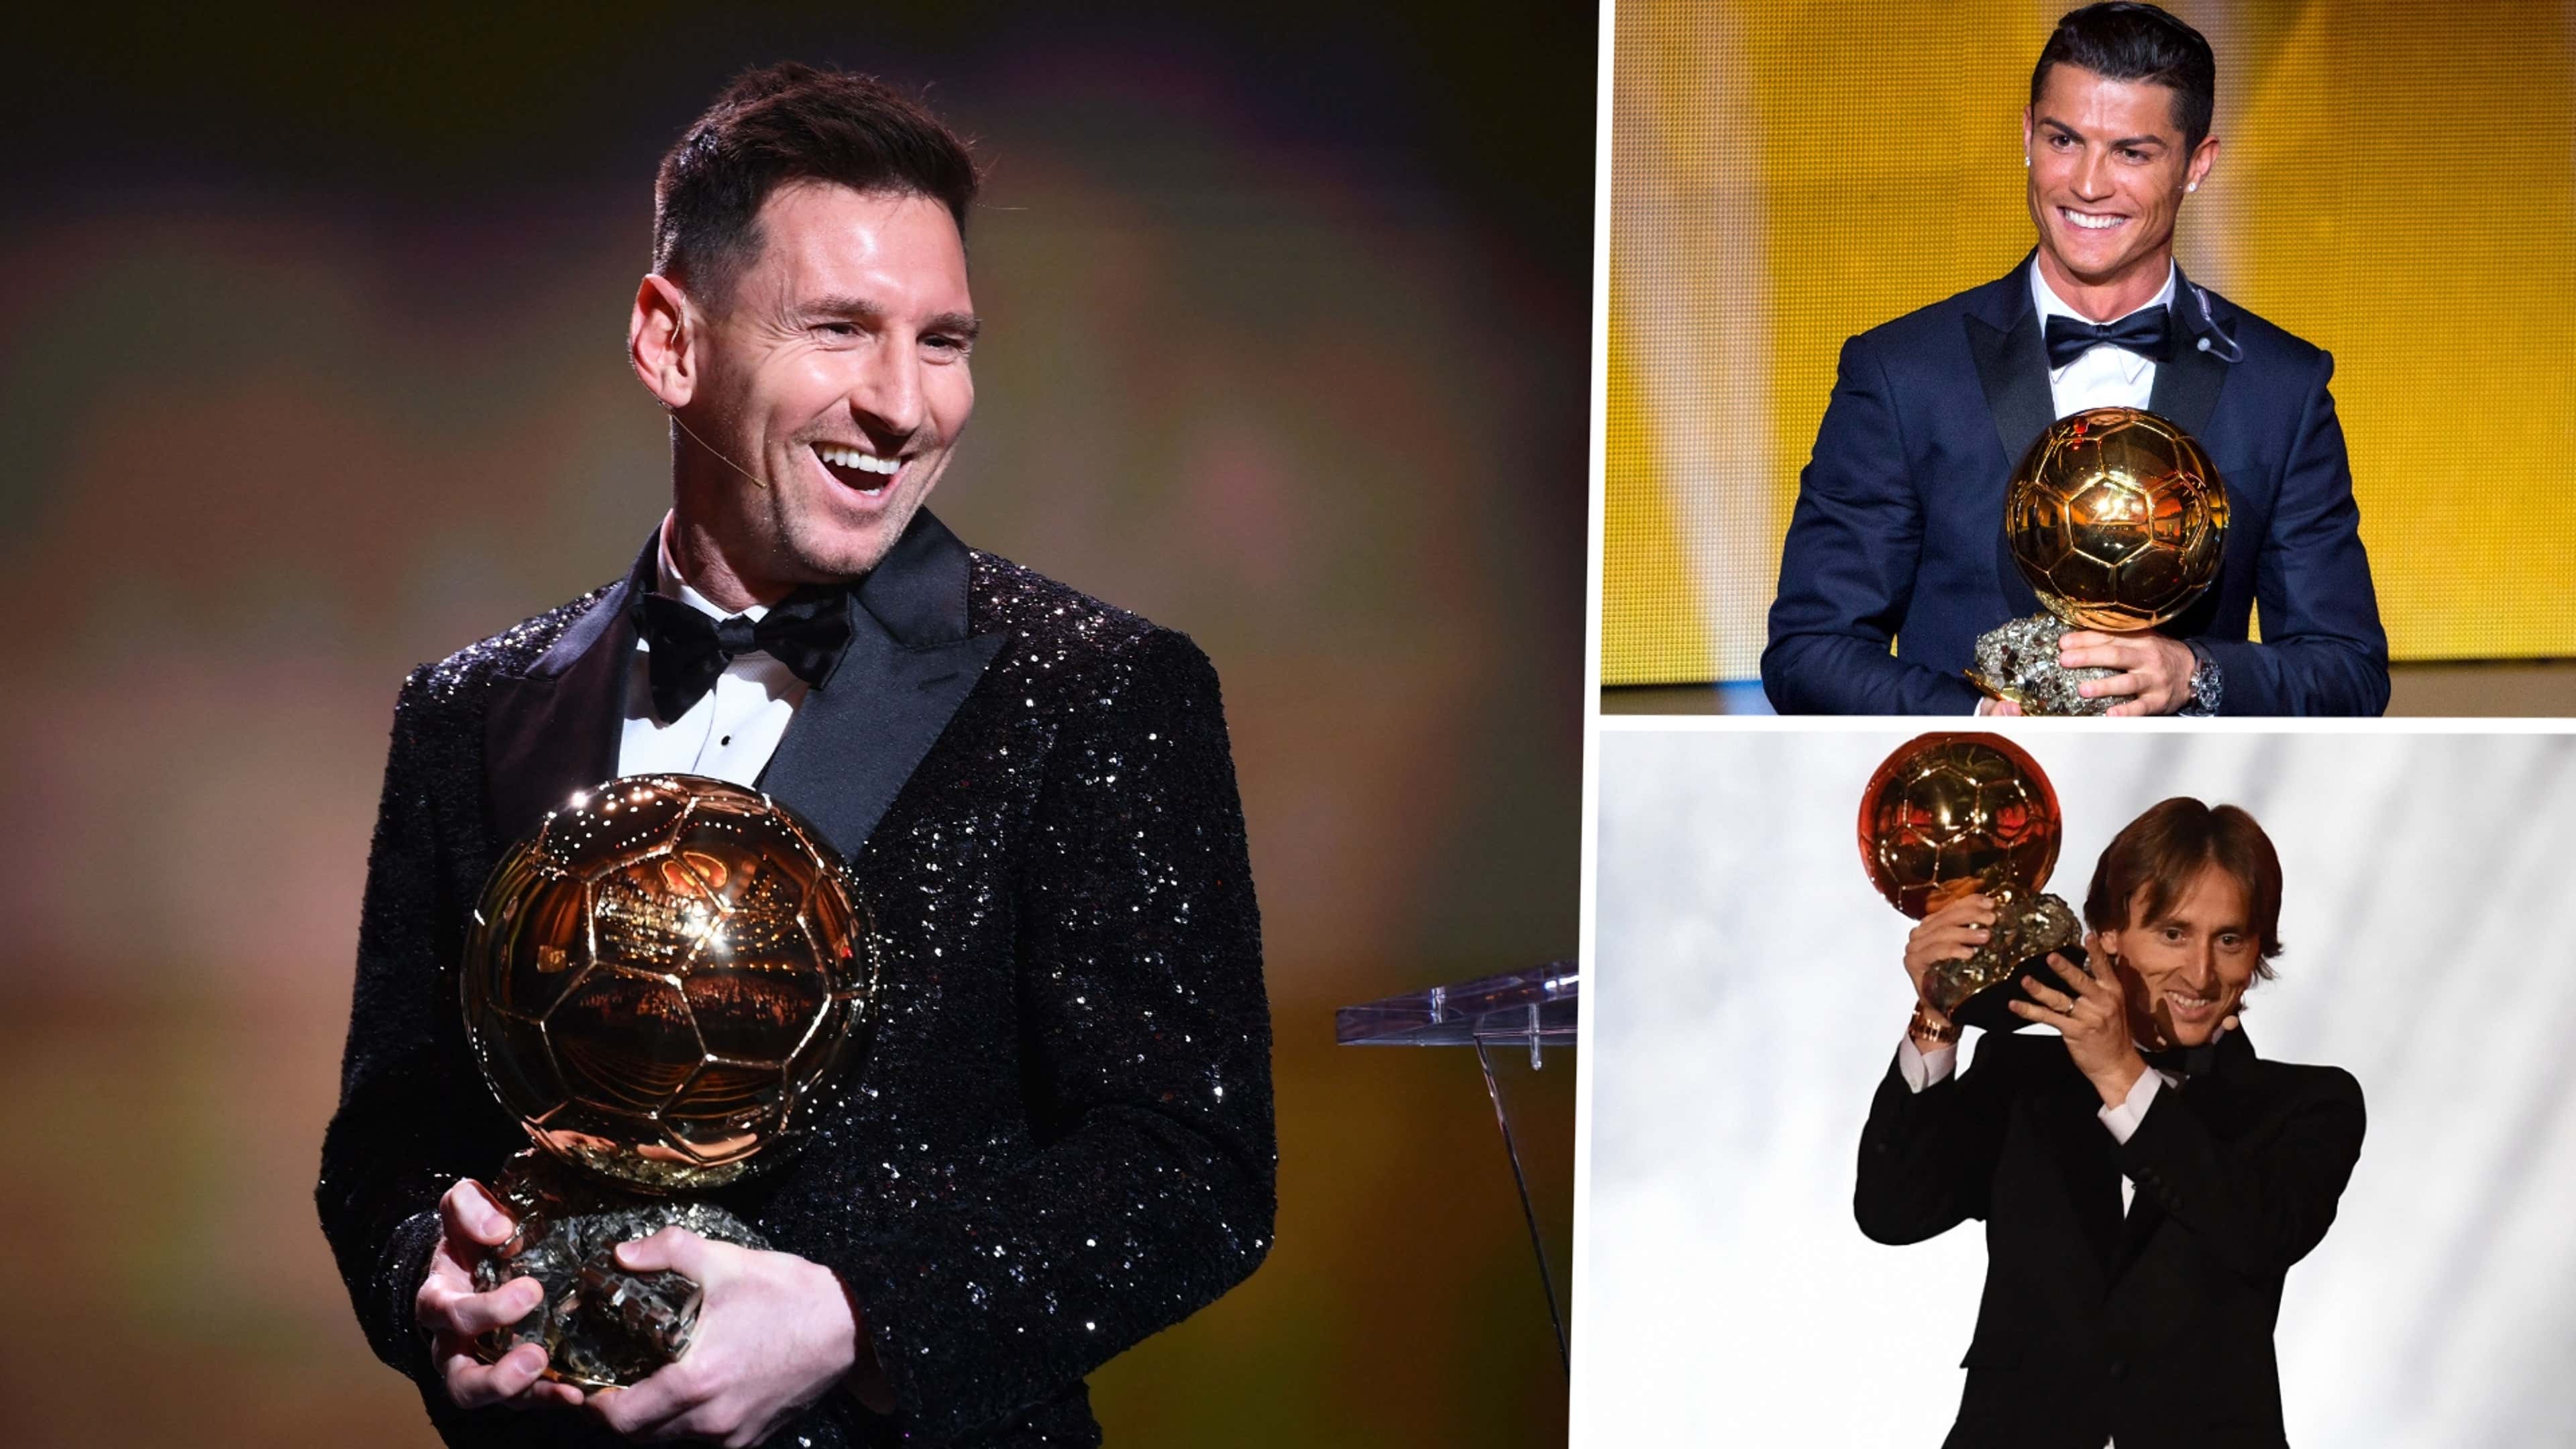 Bola de Ouro, The Best, melhor jogador: todos os prêmios individuais de  Cristiano Ronaldo